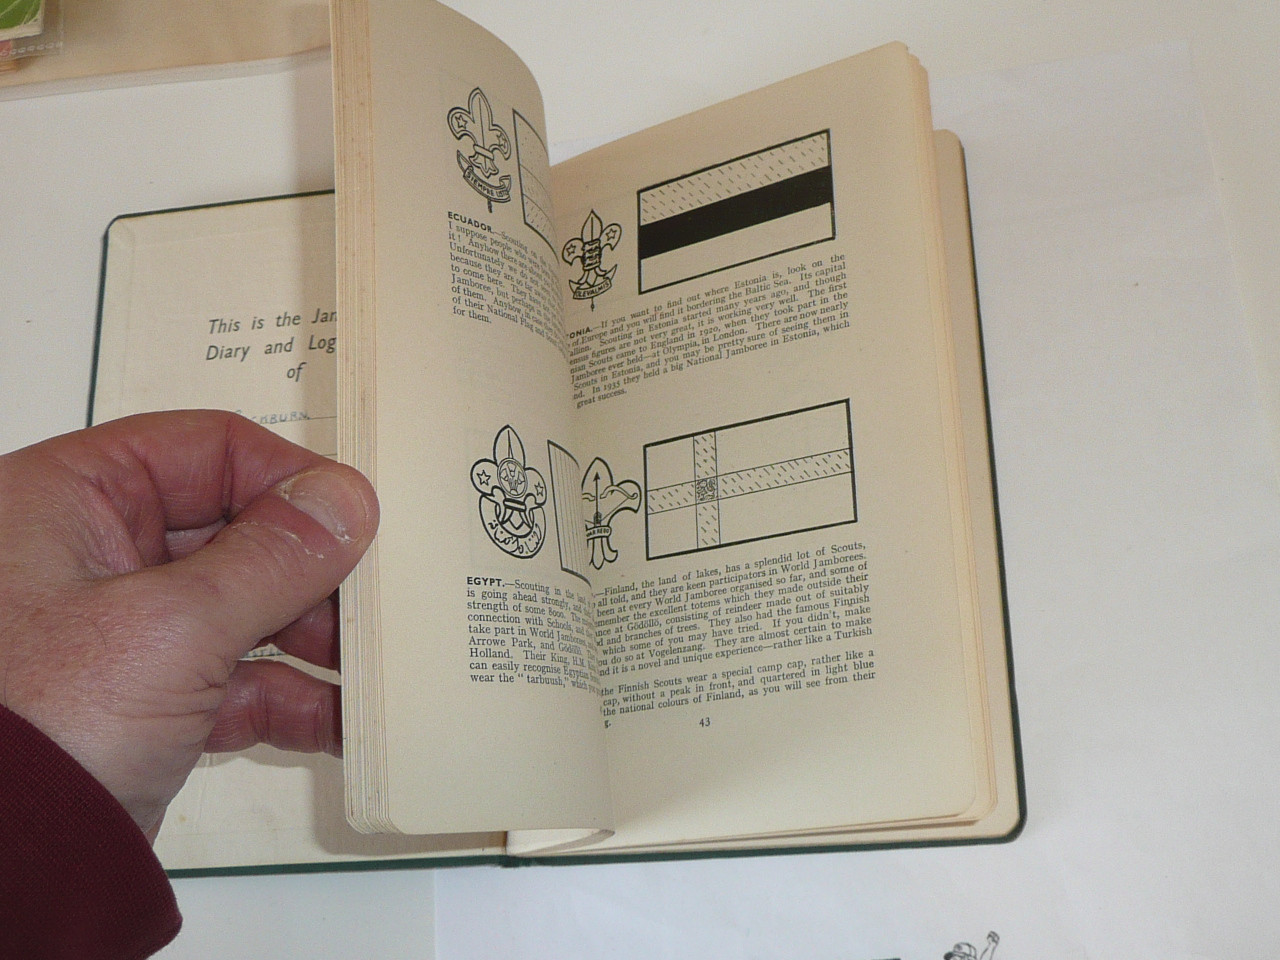 1937 World Jamboree Diary and Log Book